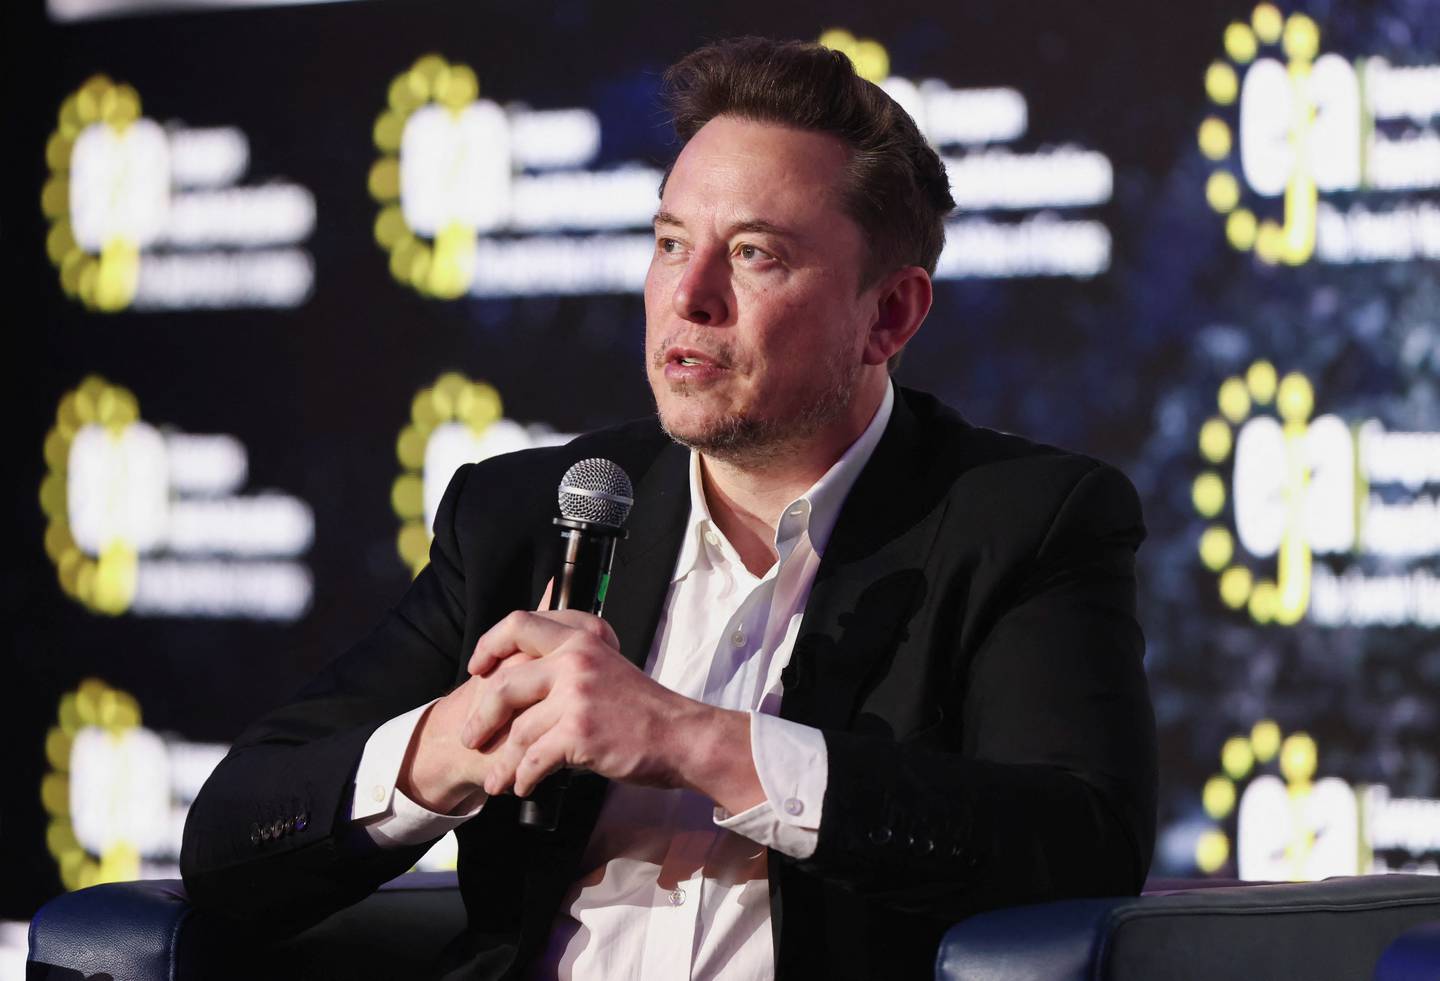 FOTO DE ARCHIVO: El CEO de Tesla, Elon Musk, asiste a una conferencia organizada por la Asociación Judía Europea, en Cracovia, Polonia, el 22 de enero de 2024. REUTERS/Lukasz Glowala/Foto de archivo